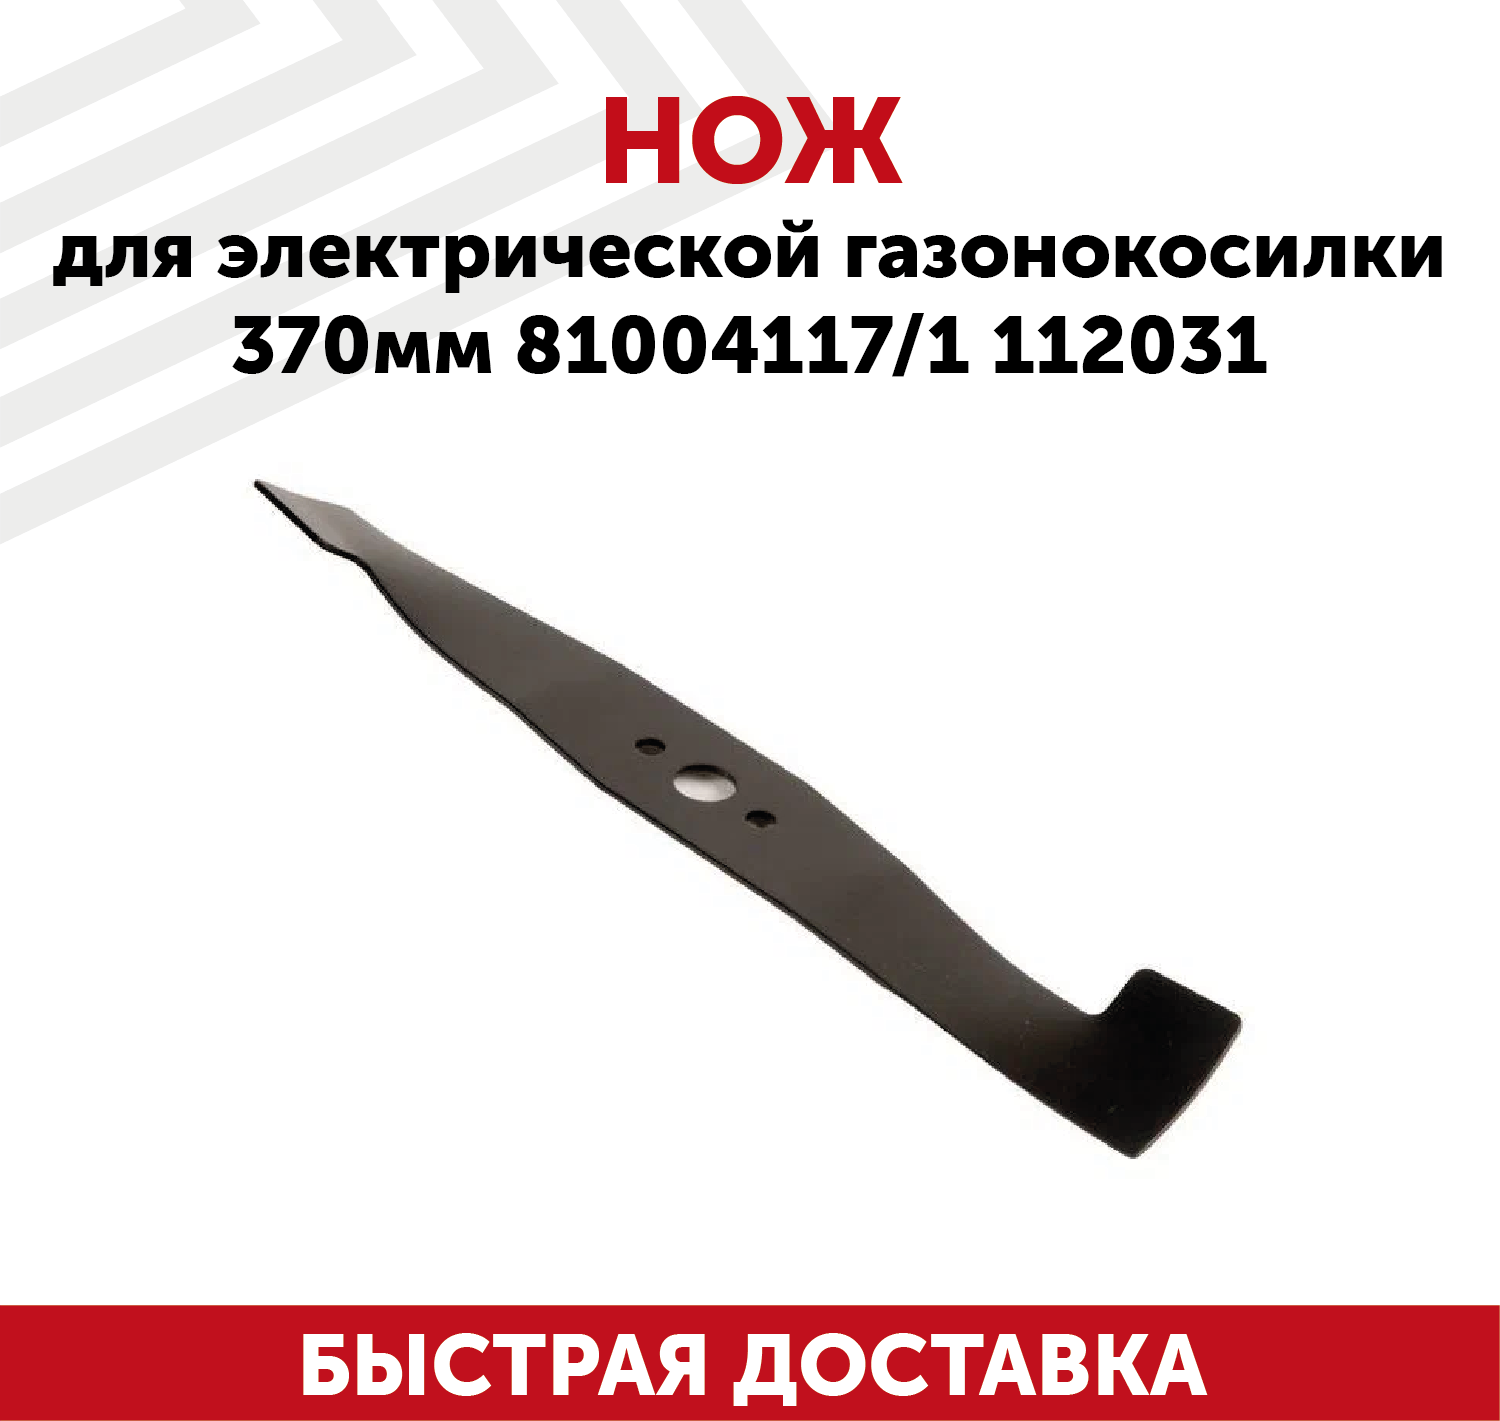 Нож для электрической газонокосилки 81004117, 1112031 (37 см)